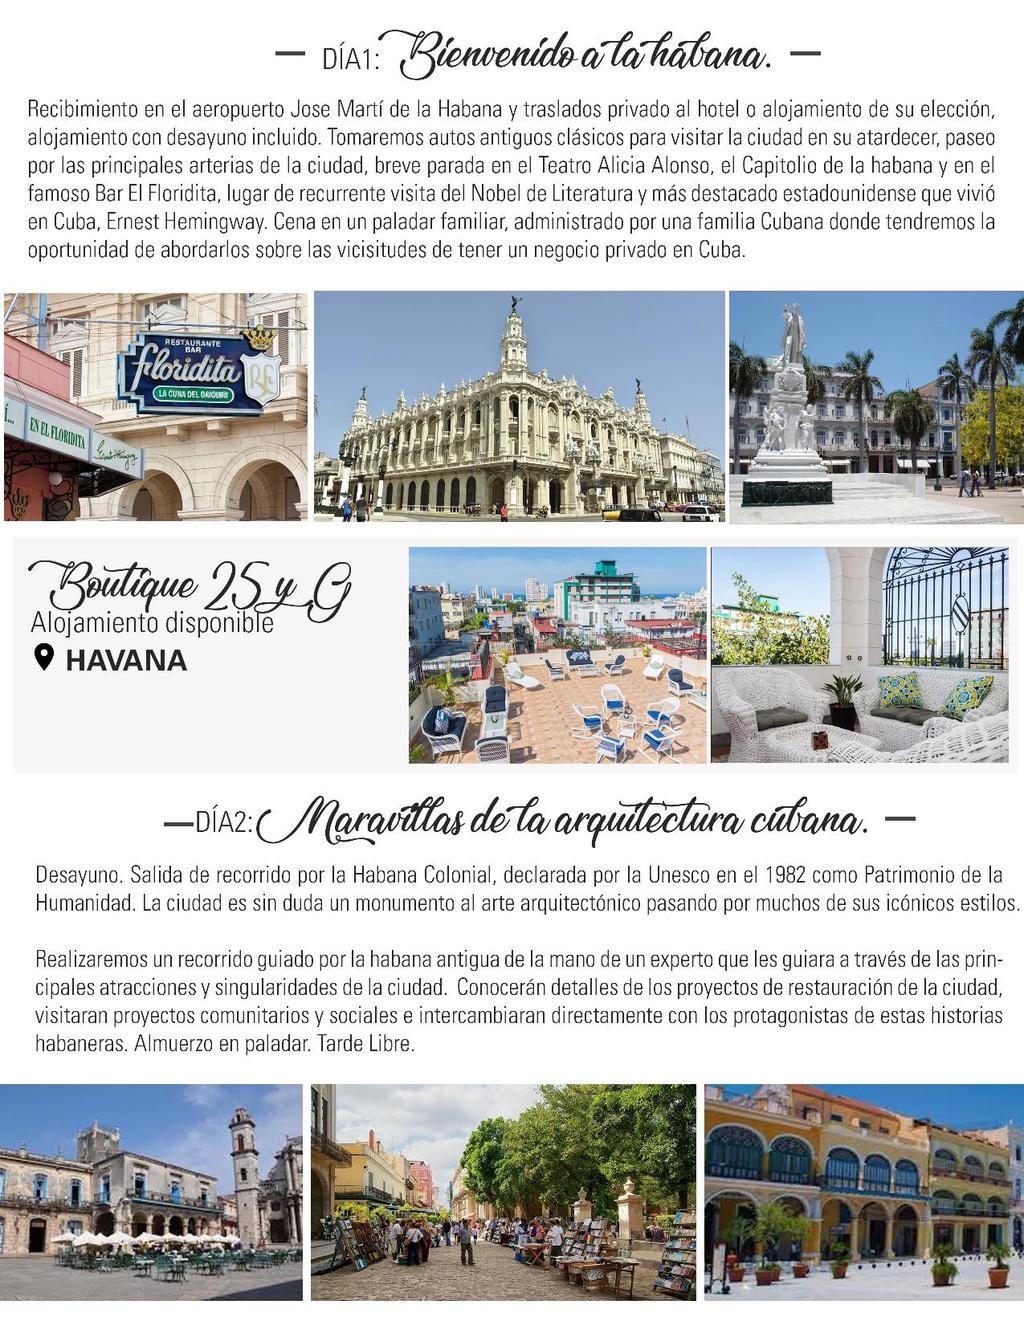 Recibimiento en el aeropuerto Jase Martí de la Habana y traslados privado al hotel o alojamiento de su elección, alojamiento con desayuno incluido.